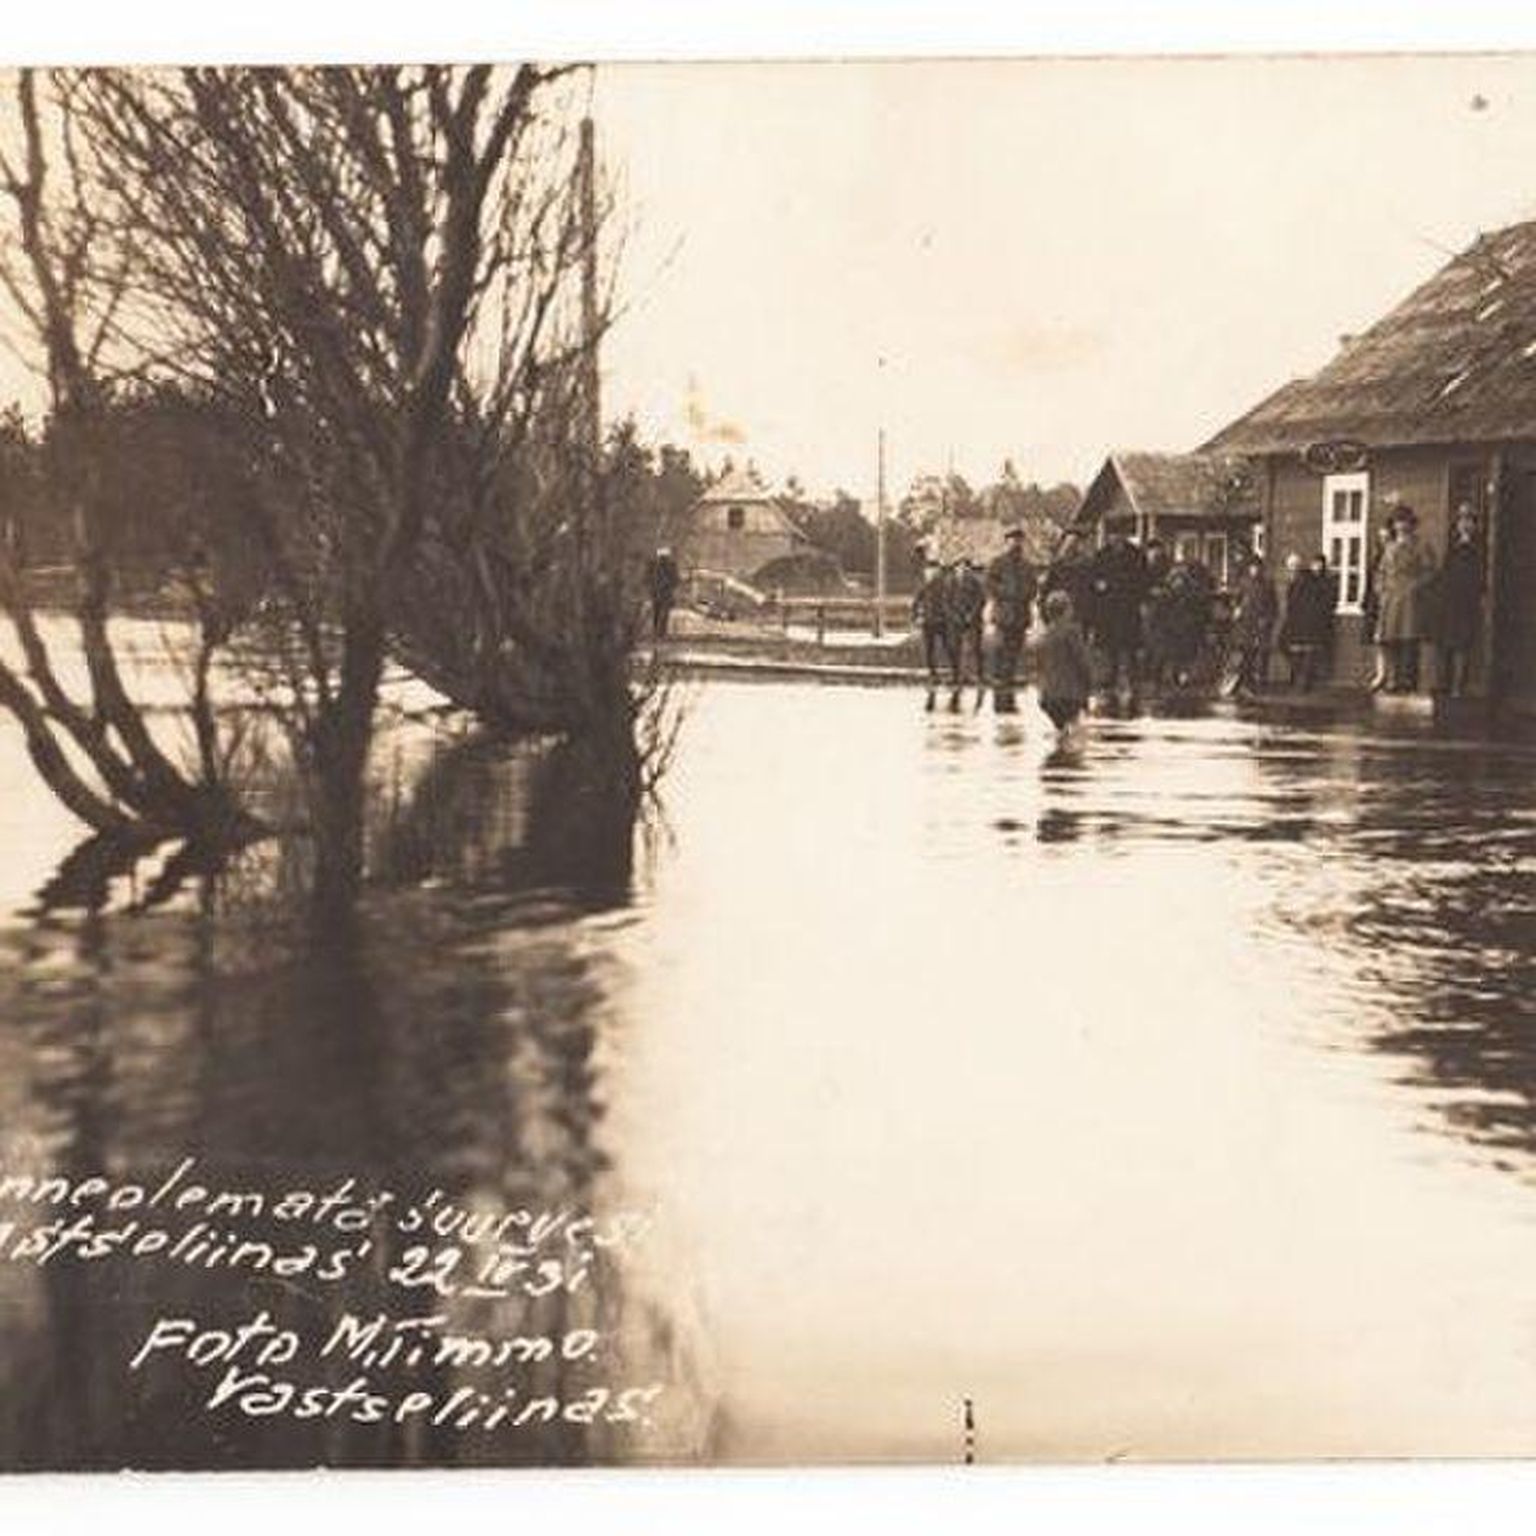 Pilt sedapuhku Lõuna-Eestist. Dateeritud 22. aprilliga 1931 ja kirjas, et enneolematu üleujutus Vastseliinas.